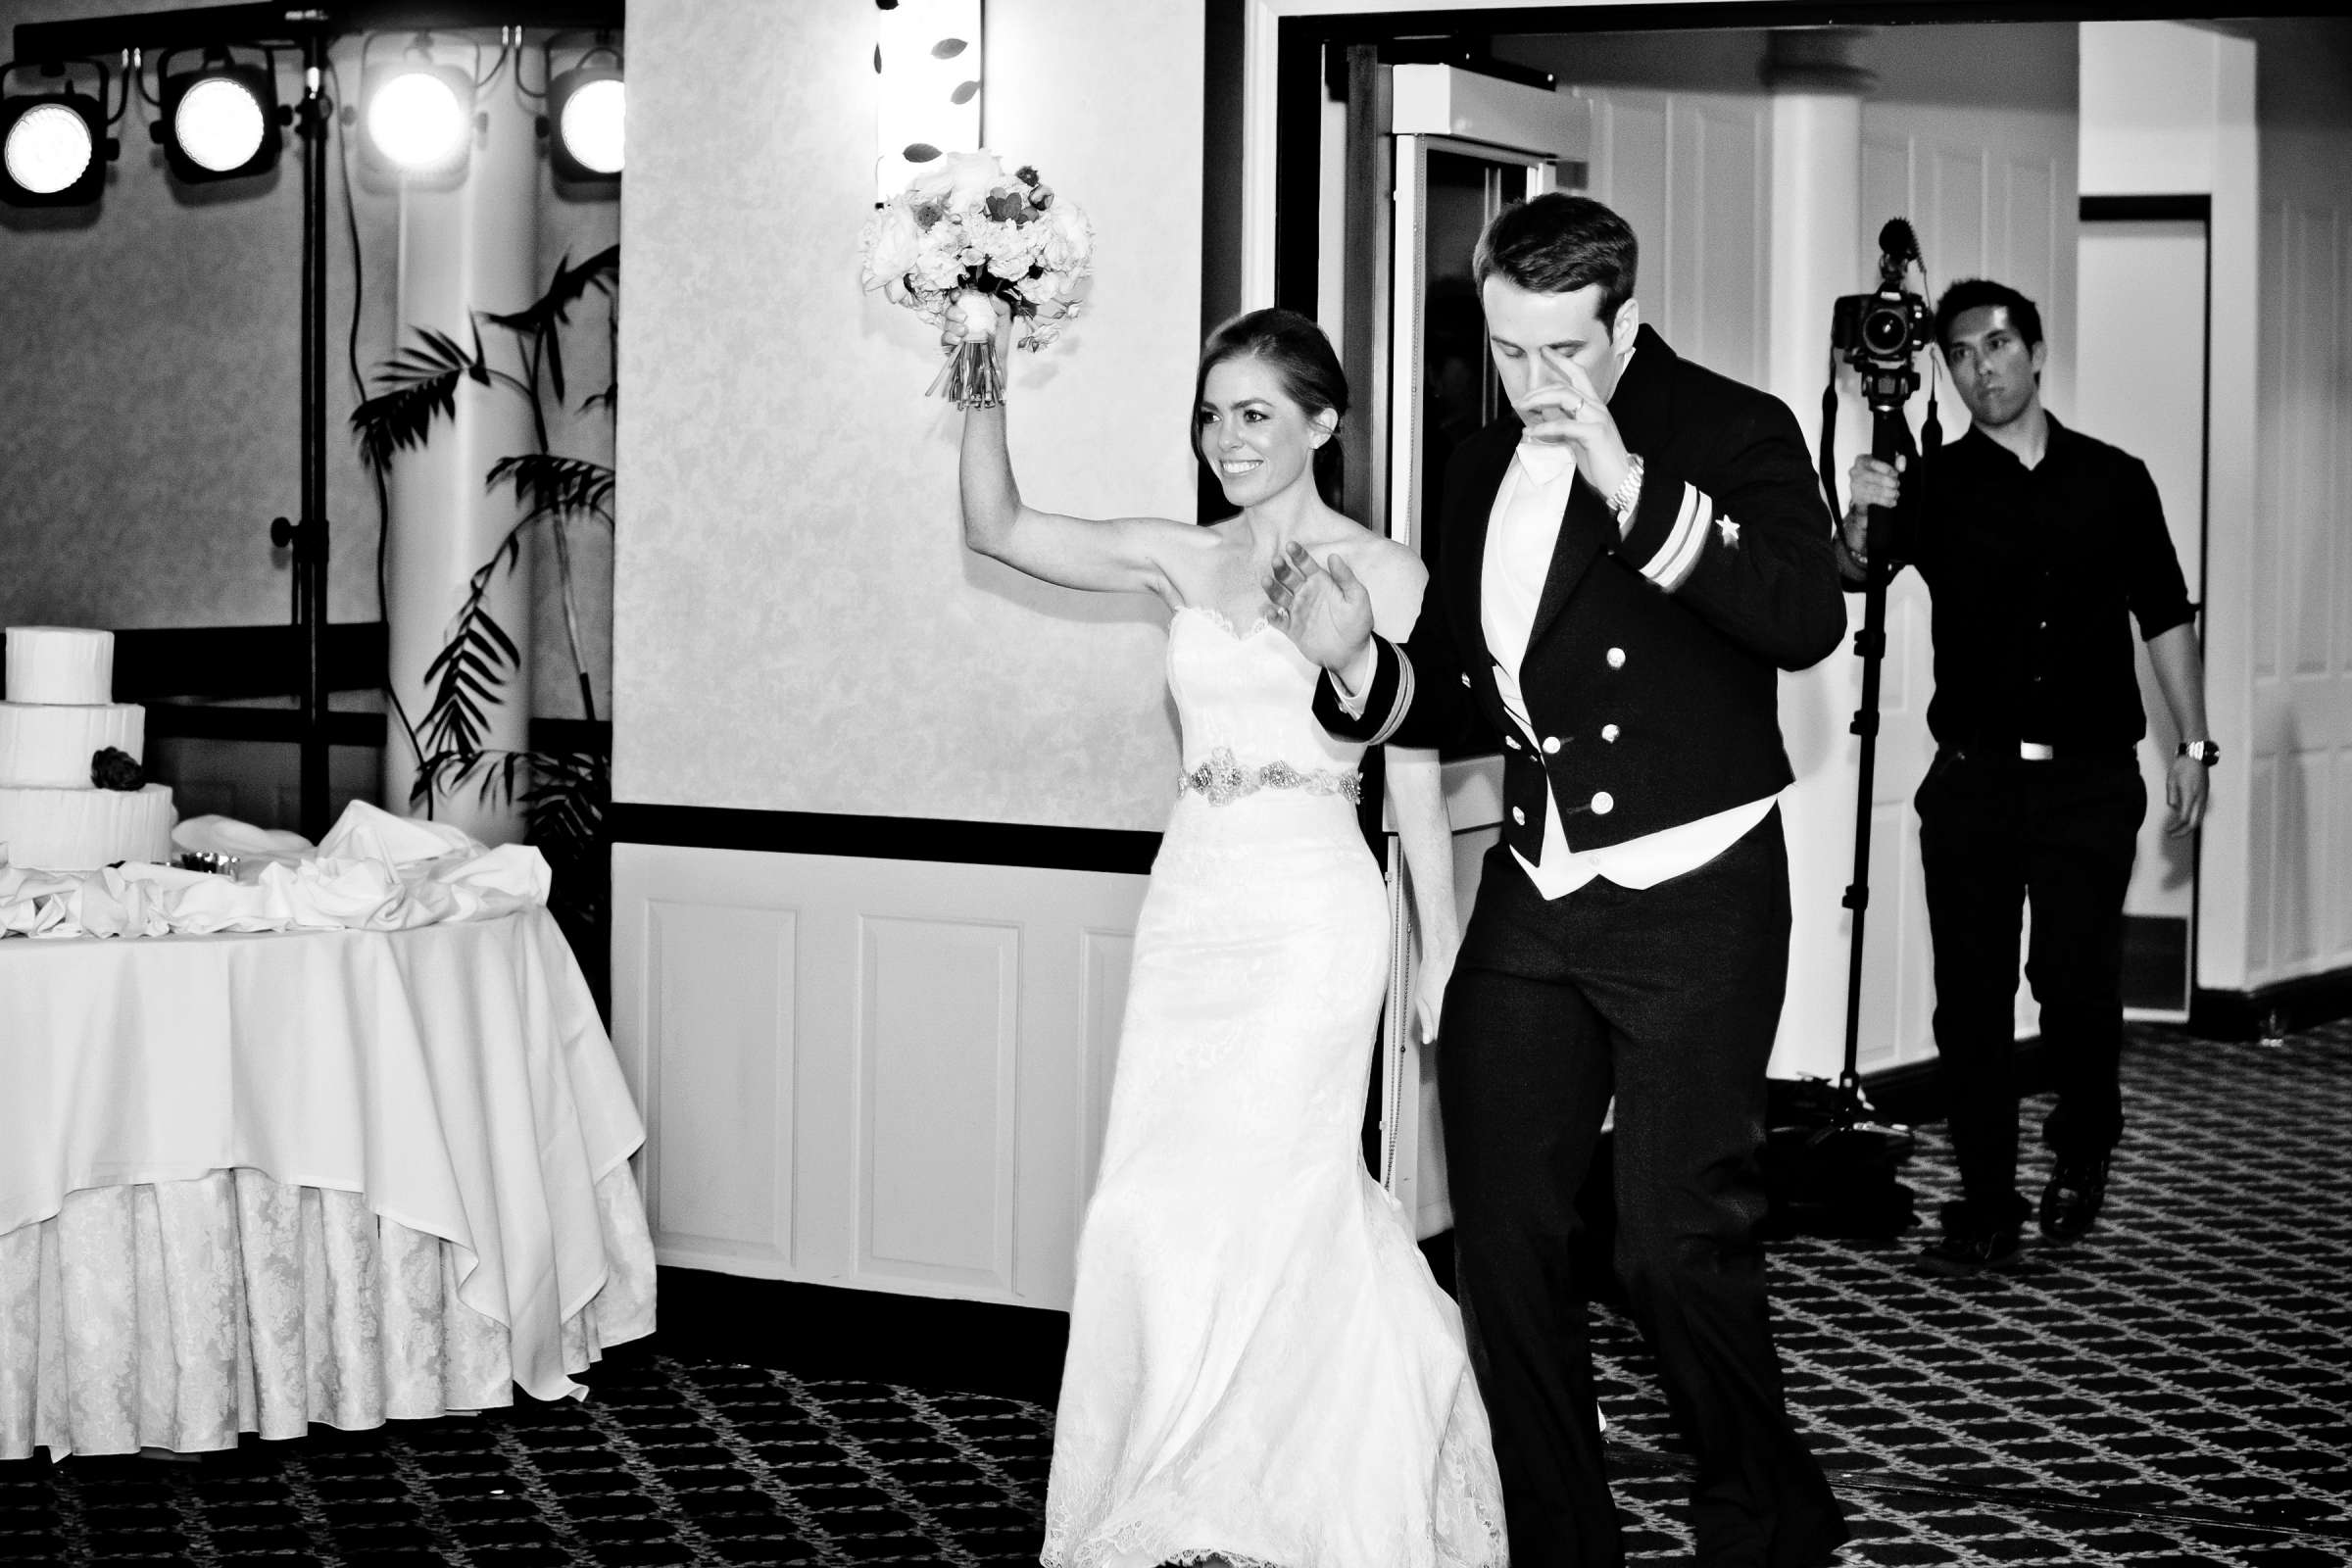 Admiral Kidd Club Wedding coordinated by I Do Weddings, Ashley and Rhett Wedding Photo #358488 by True Photography